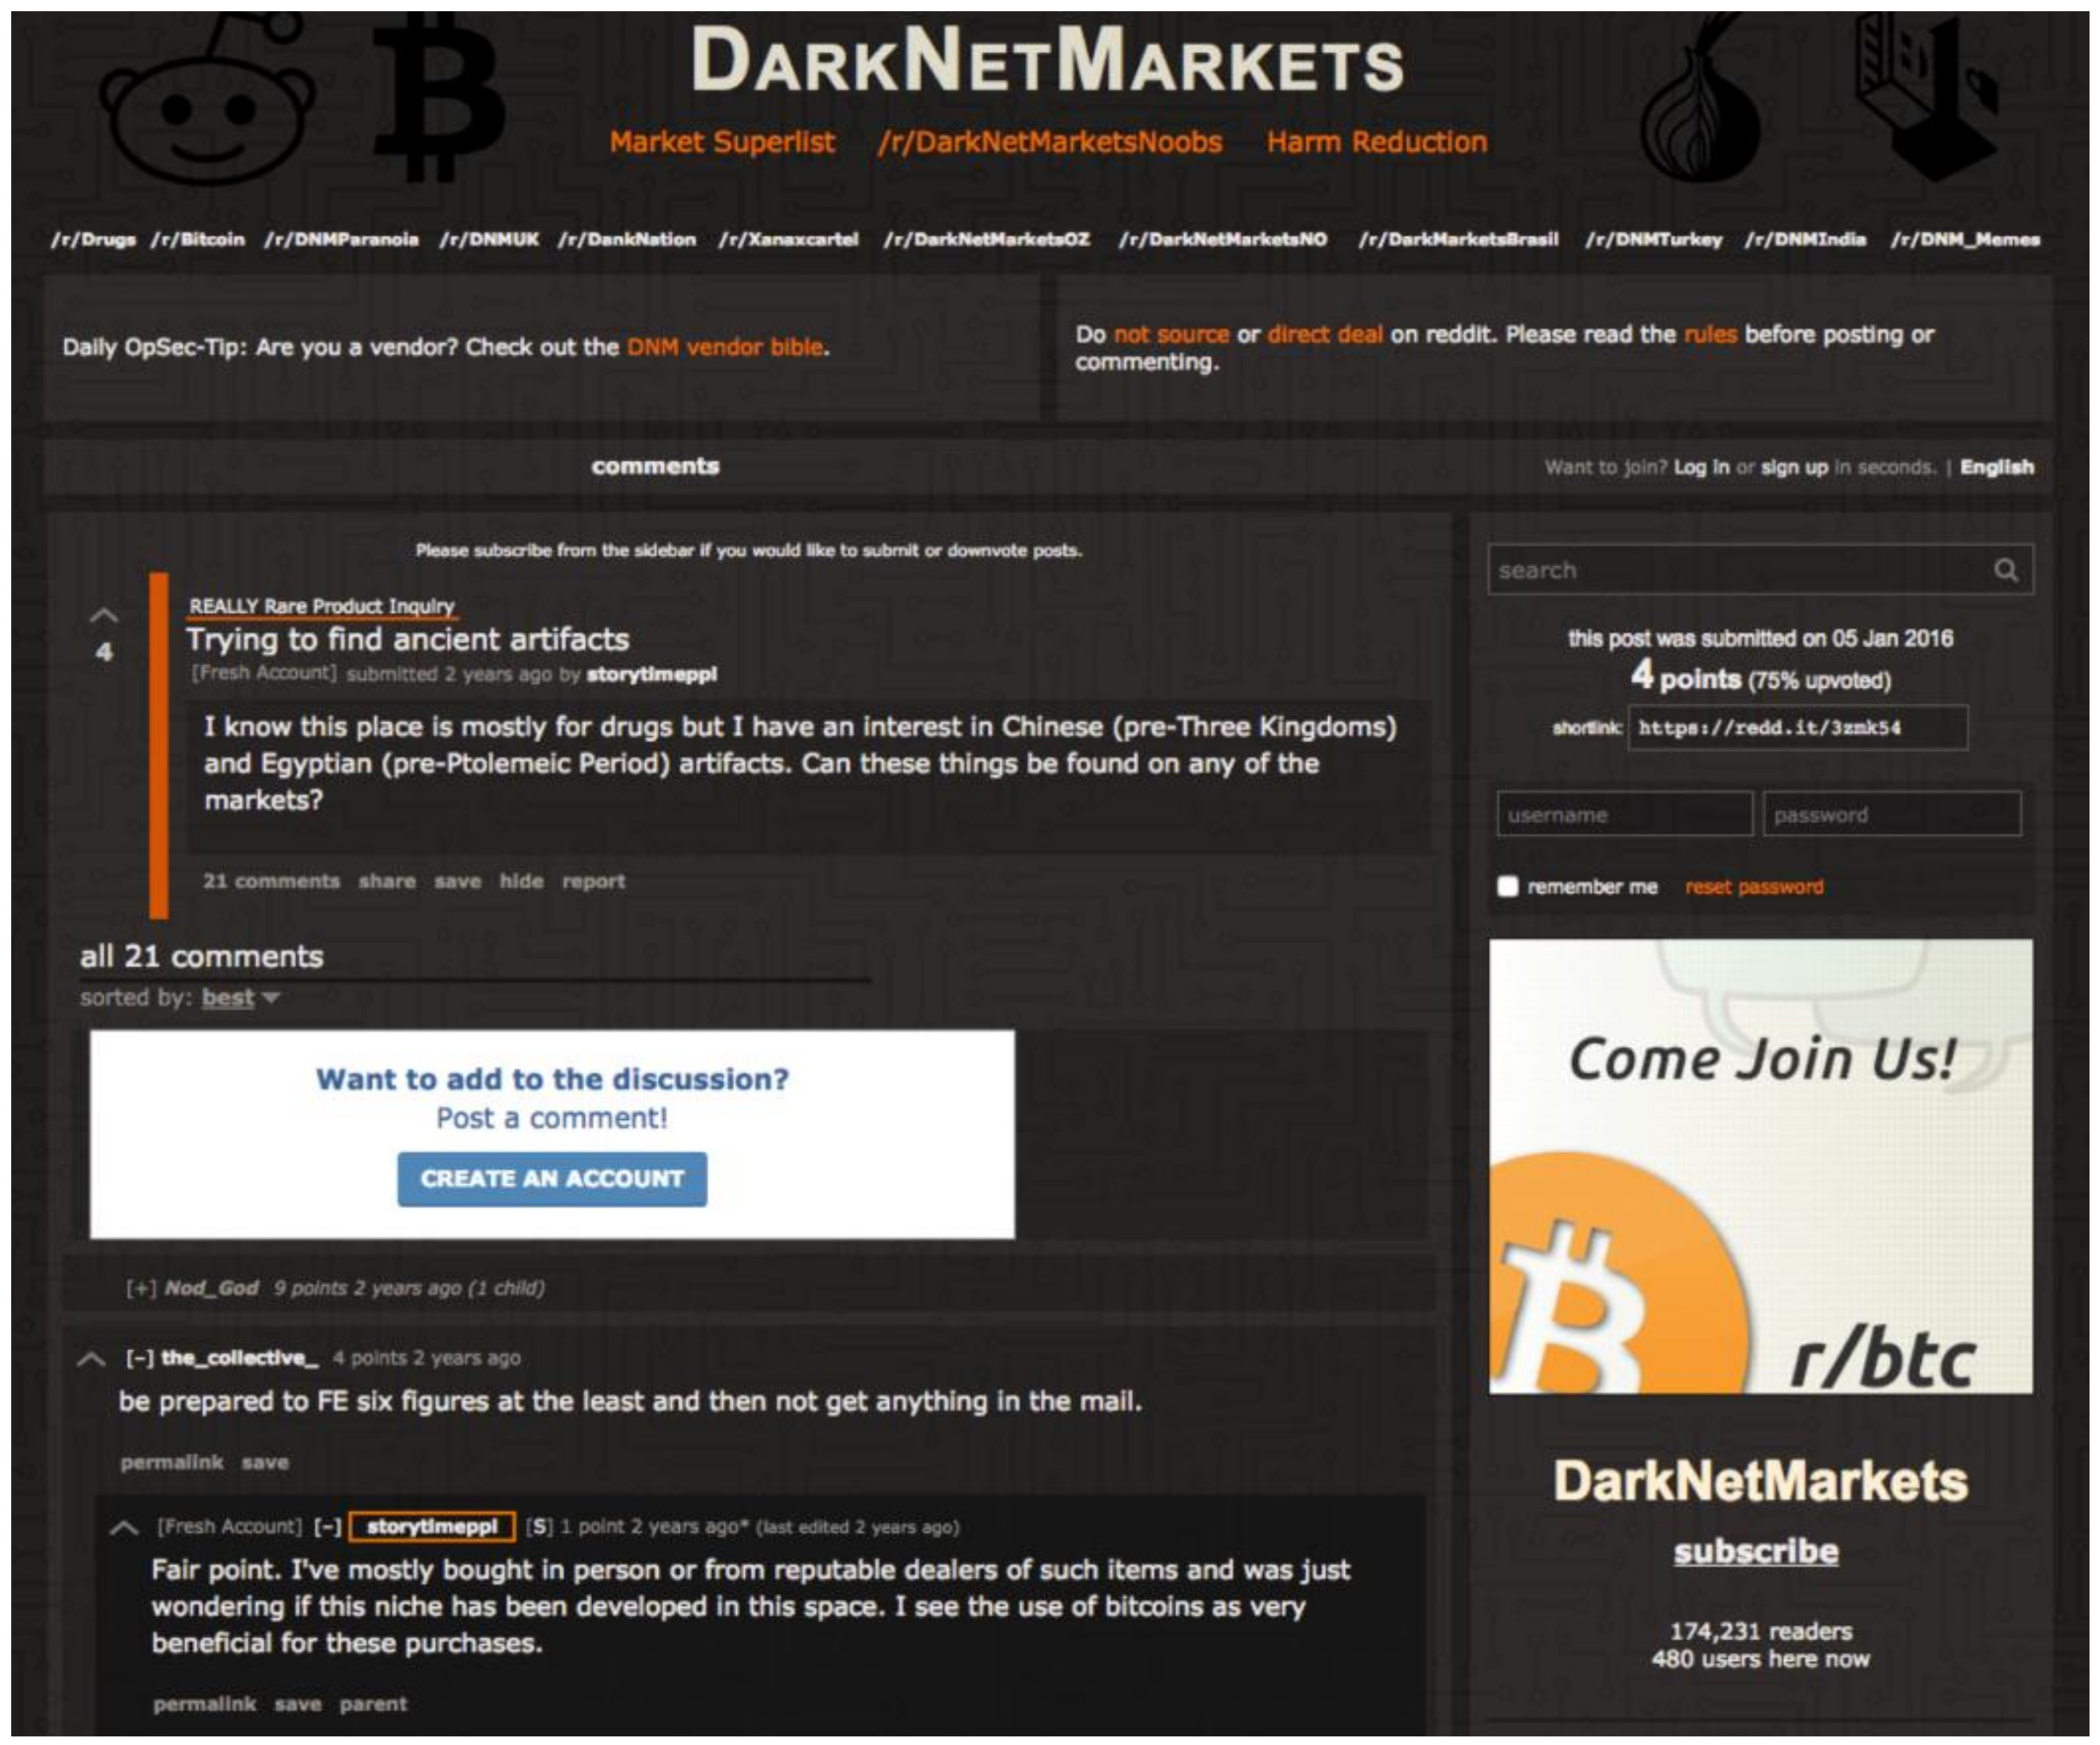 Reddit Darknet Market Superlist